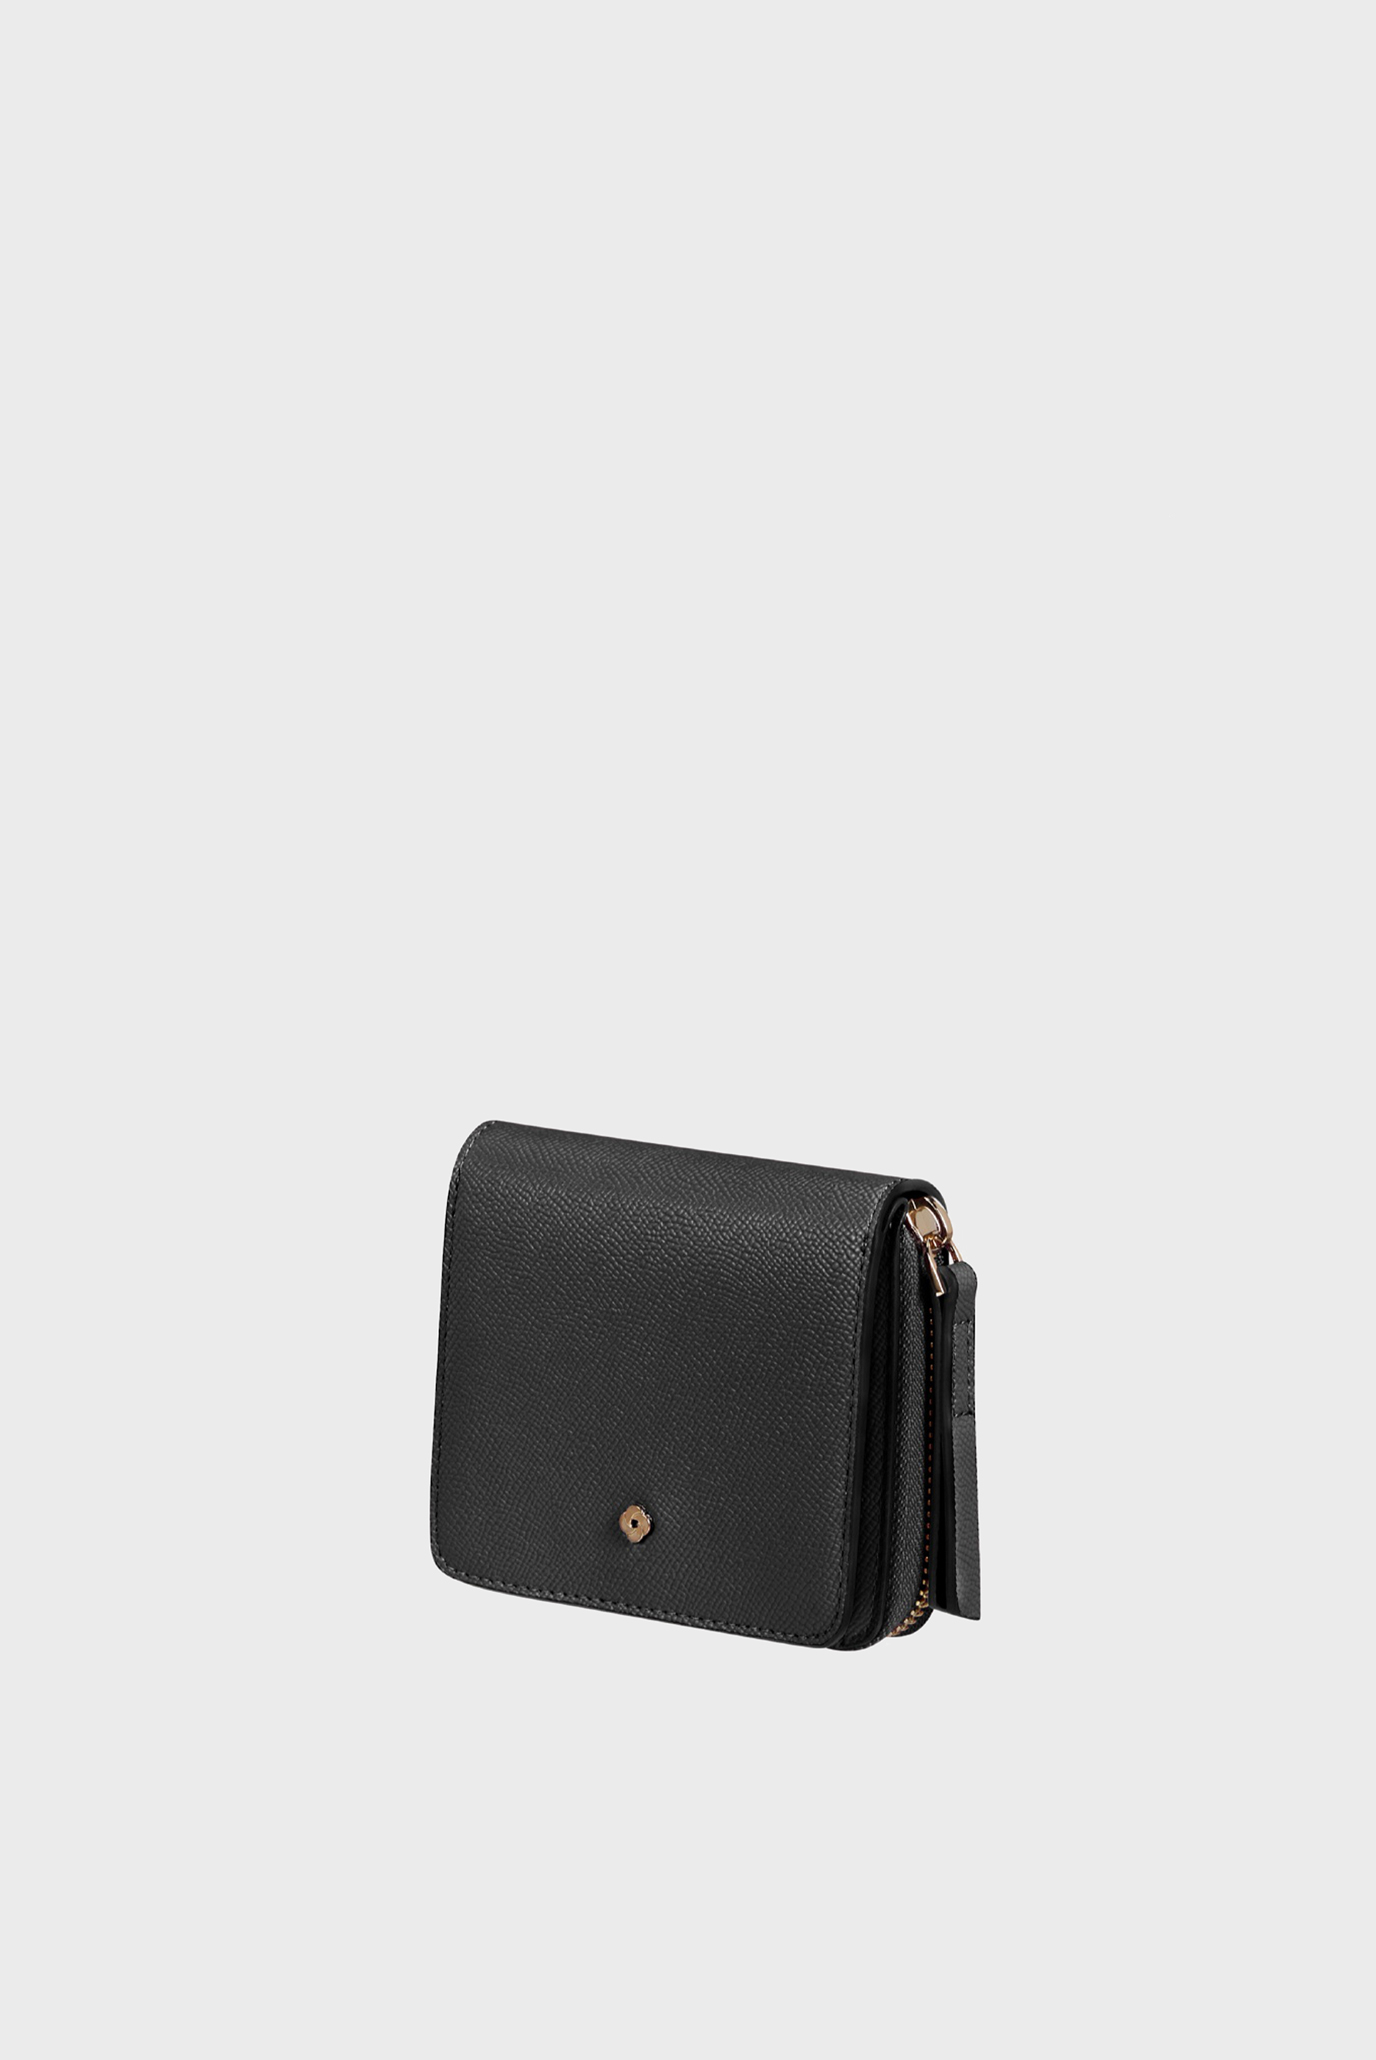 Жіночий чорний гаманець CHROMATE SLG 1